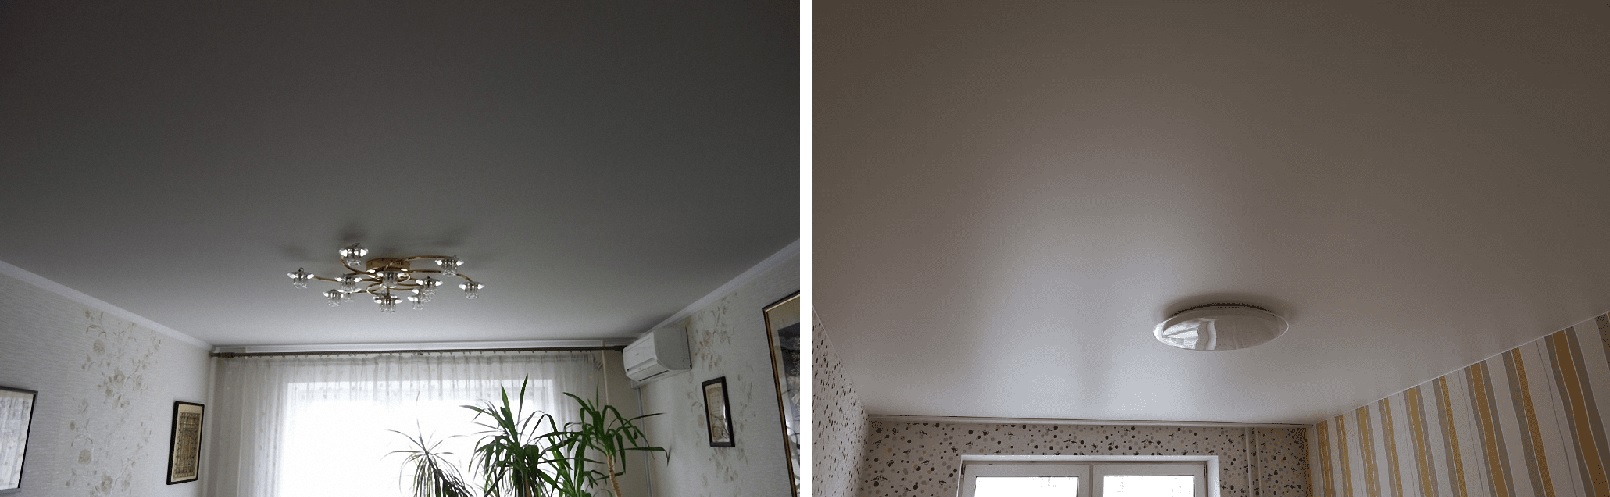 Простой натяжной потолок: фото работ компании Алези - недорогие полотна с бесплатным замером и установкой, высокий стандарт качества